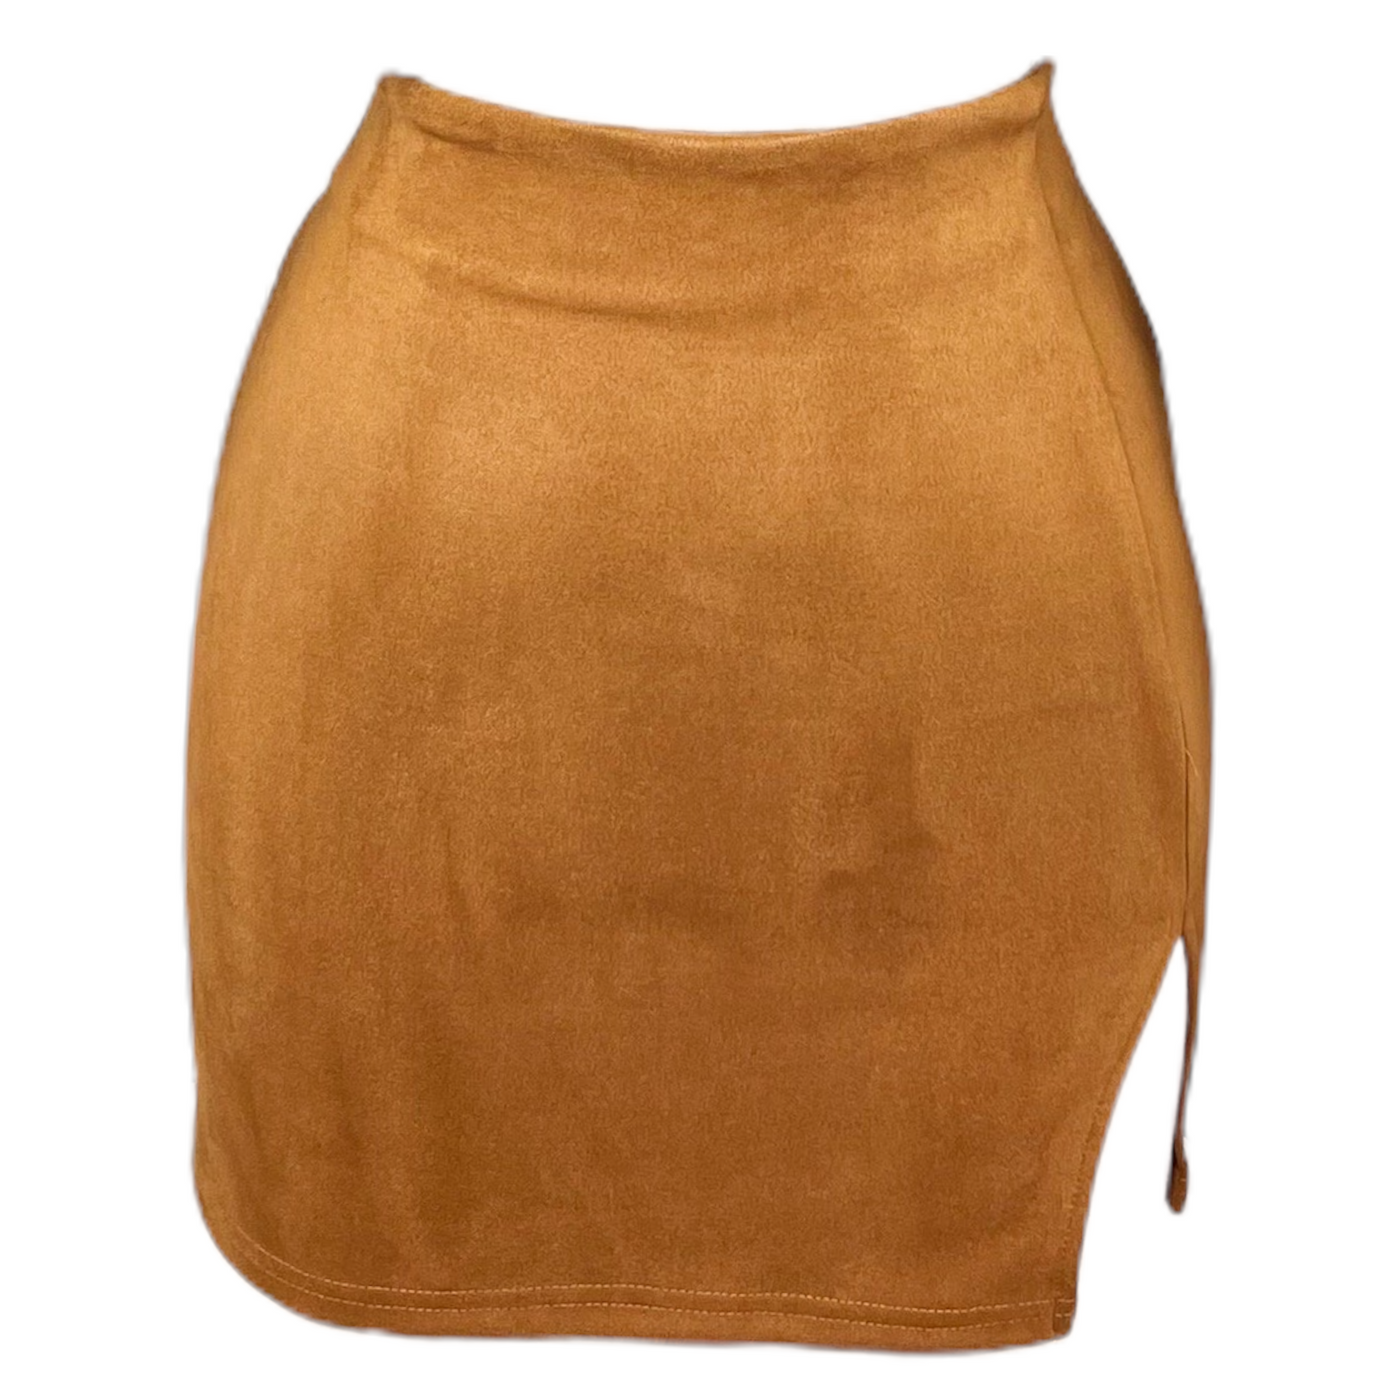 Pumpkin Spice Skirt - Camel